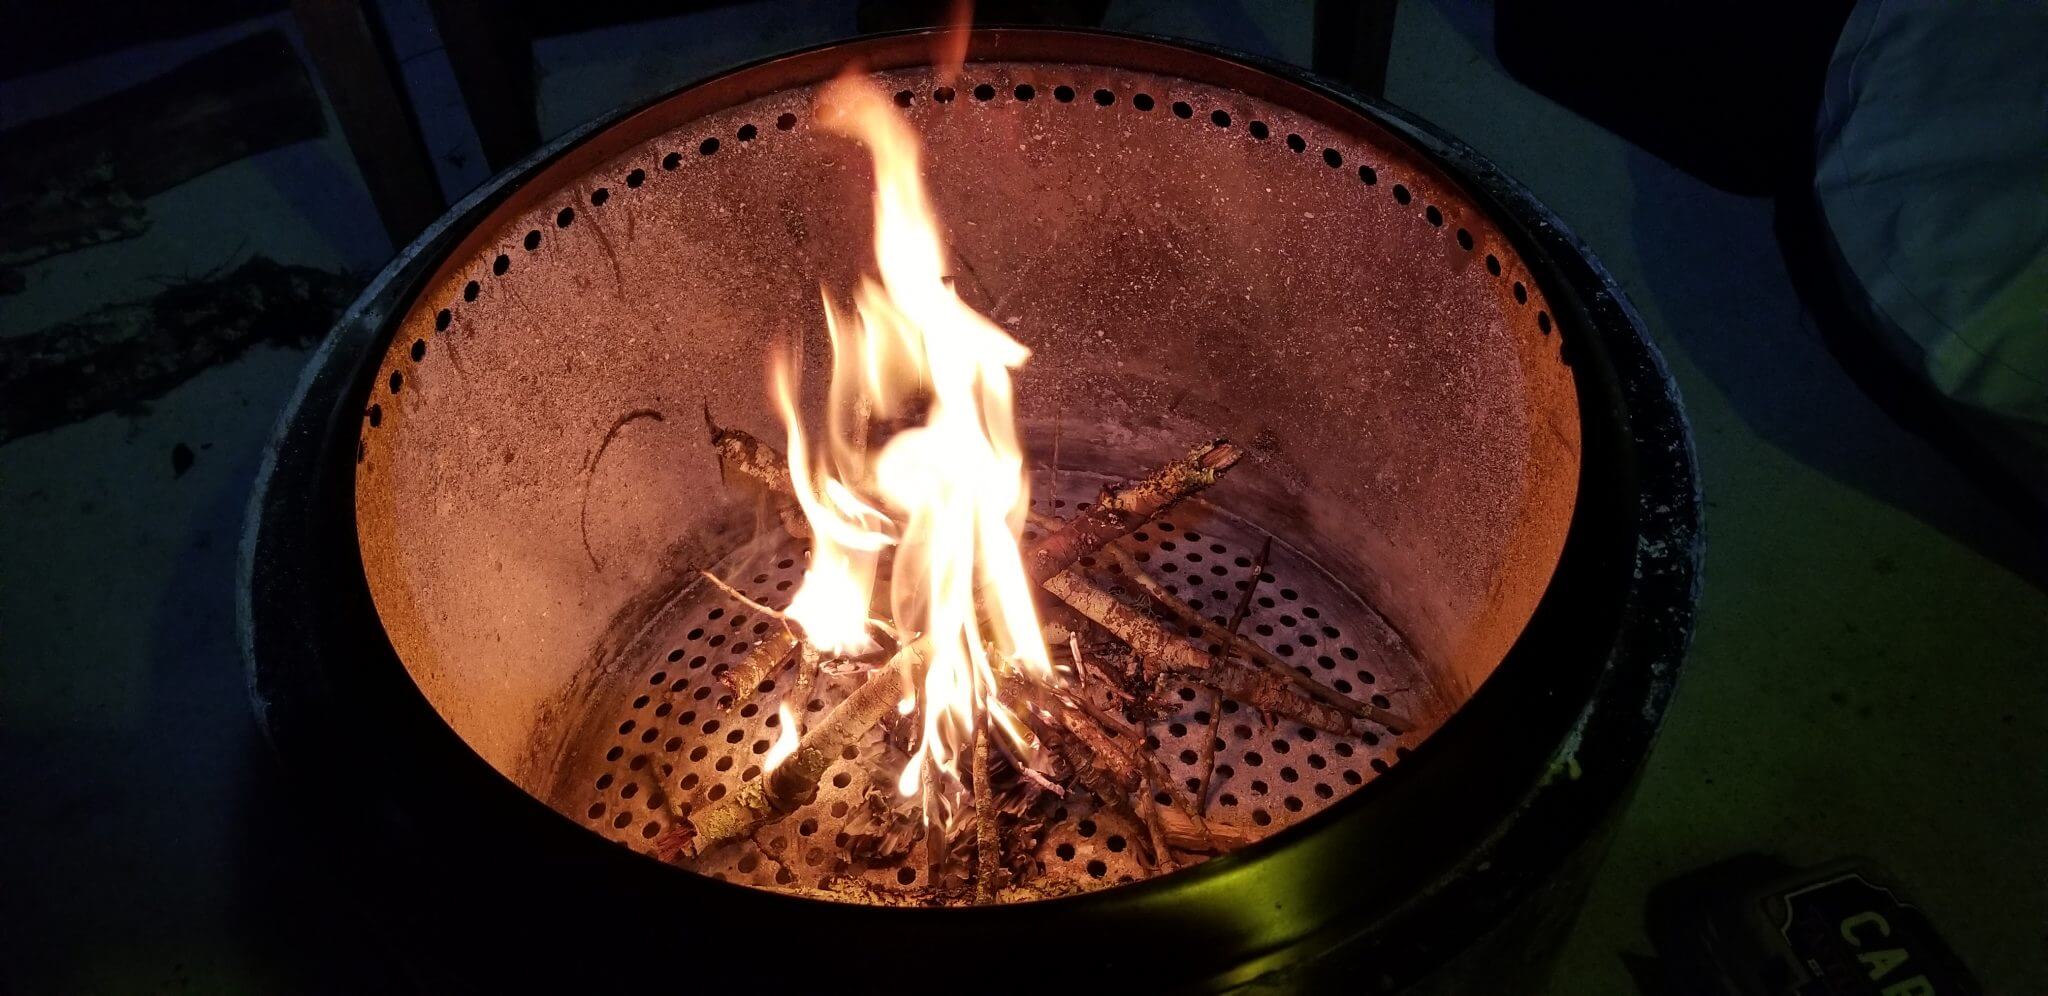 My SoloStove Bonfire Firepit Story